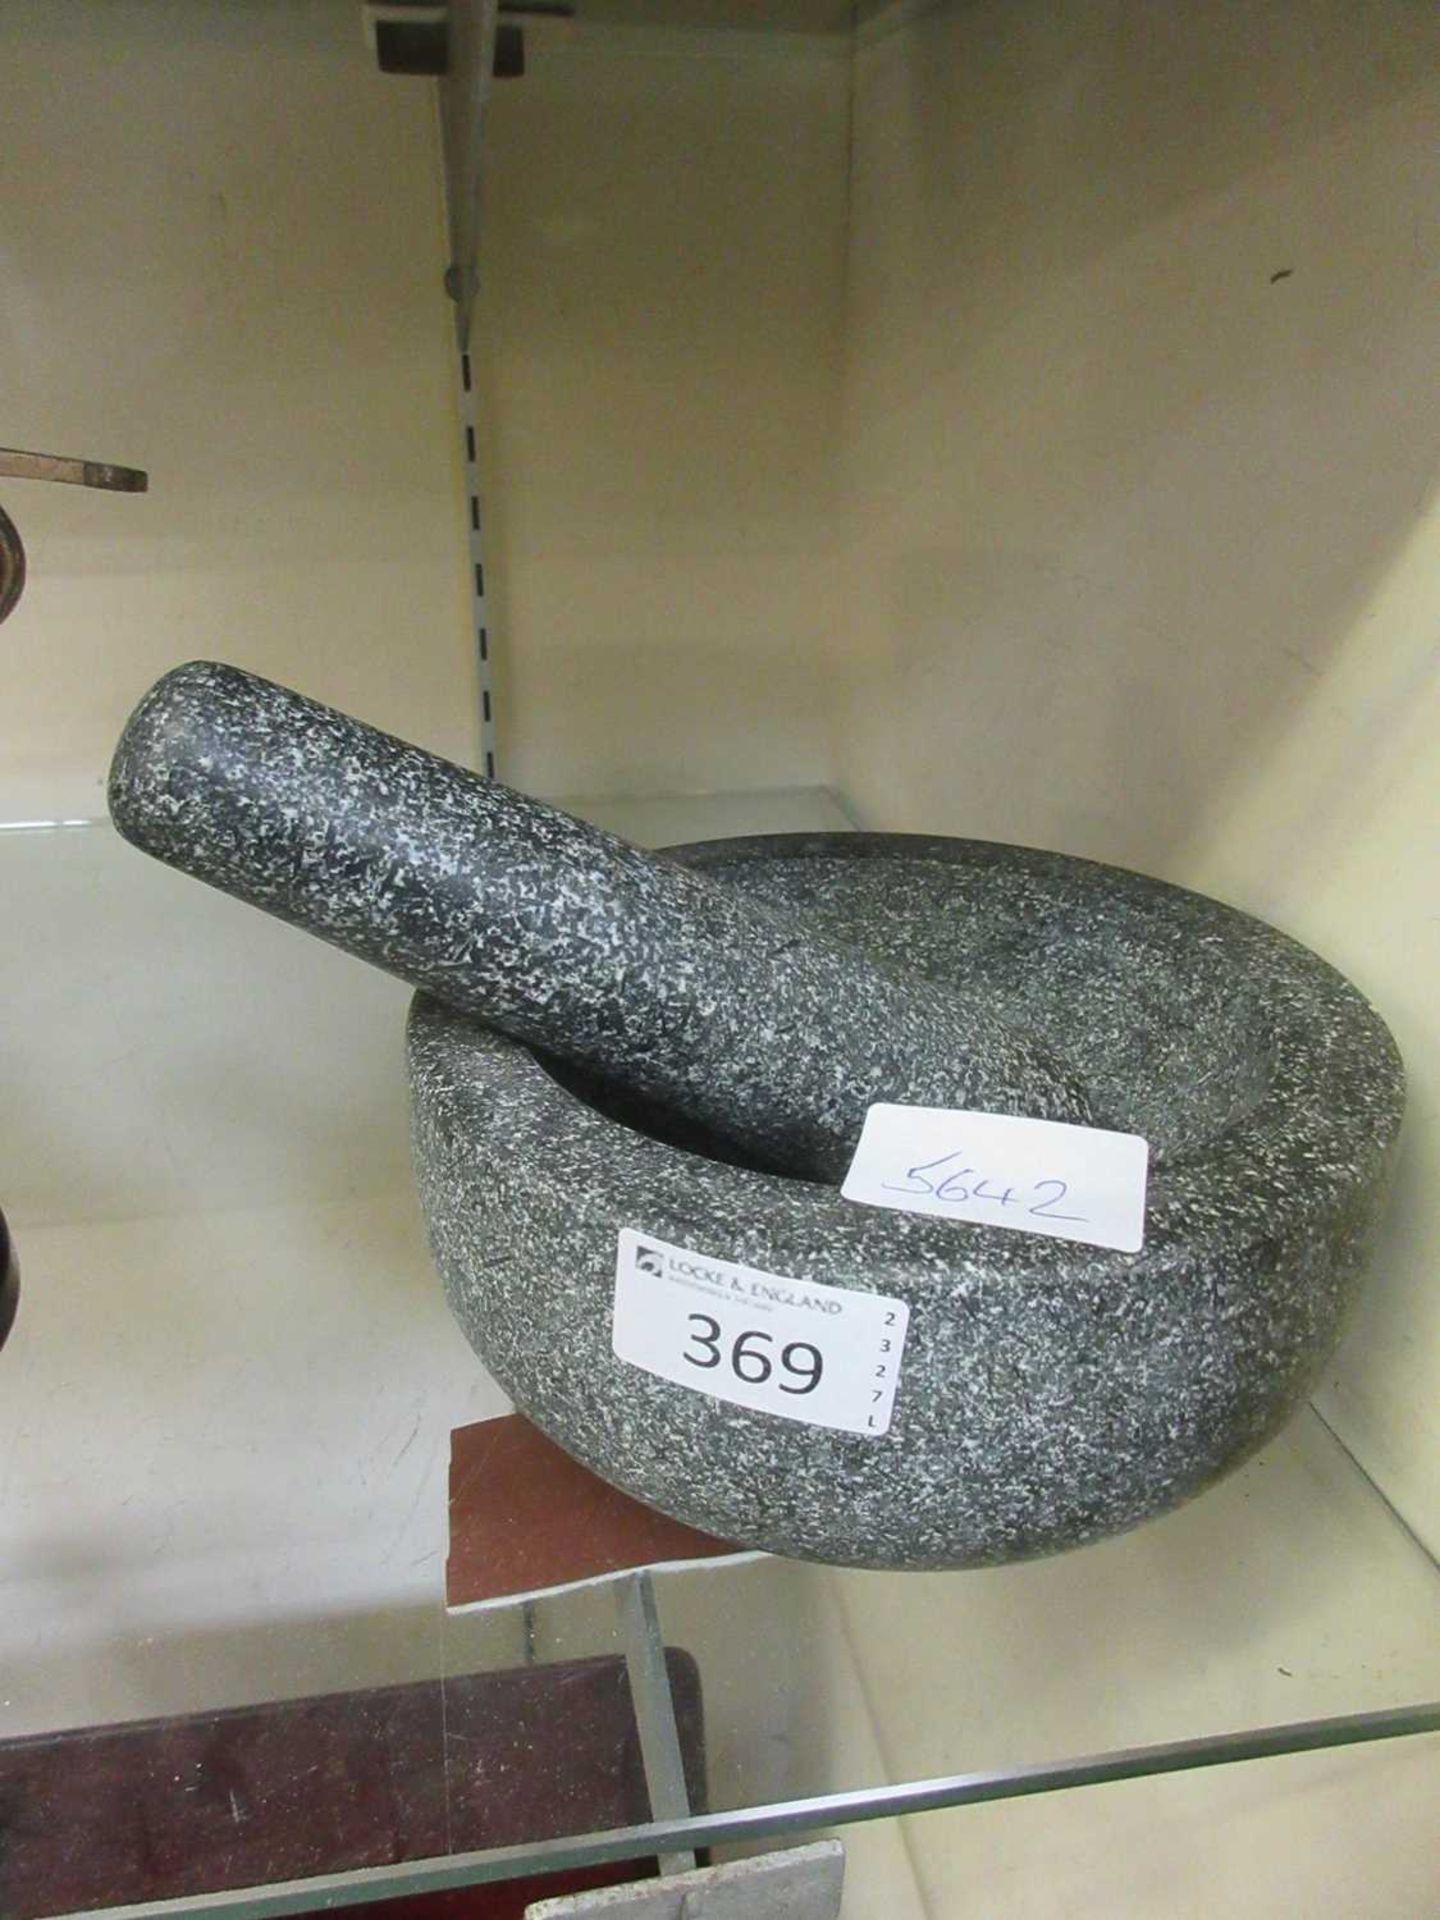 A granite mortar and pestle